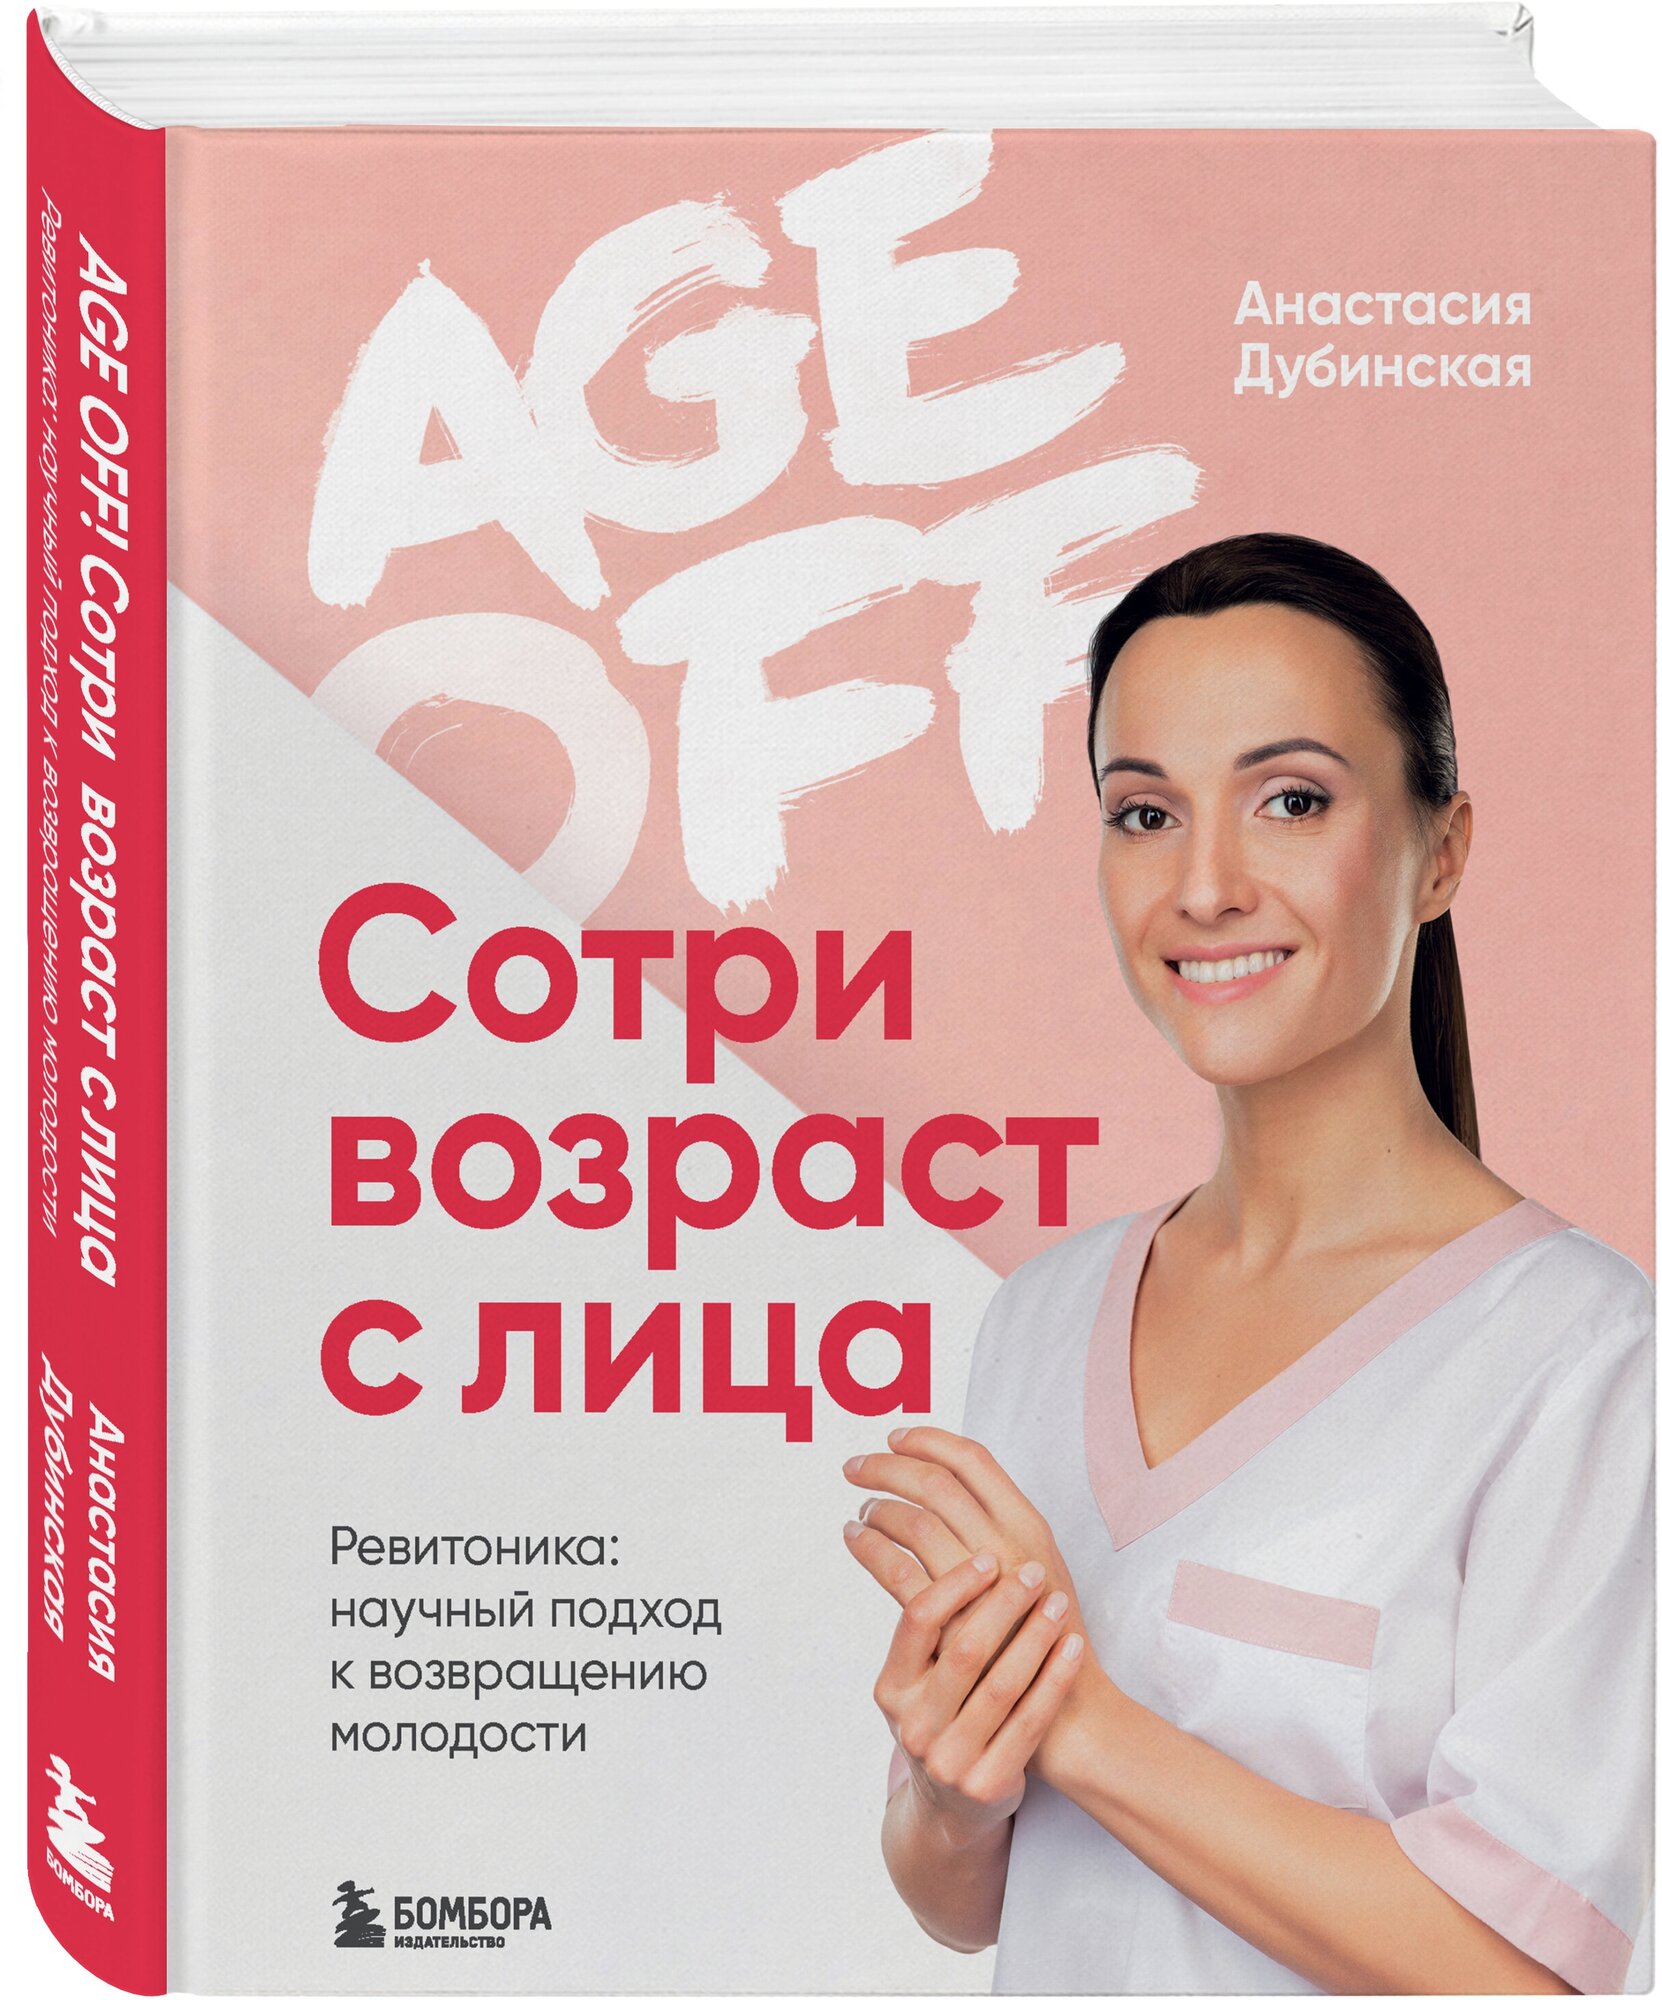 Дубинская А.Д. "Age off. Сотри возраст с лица. Ревитоника: научный подход к возвращению молодости"